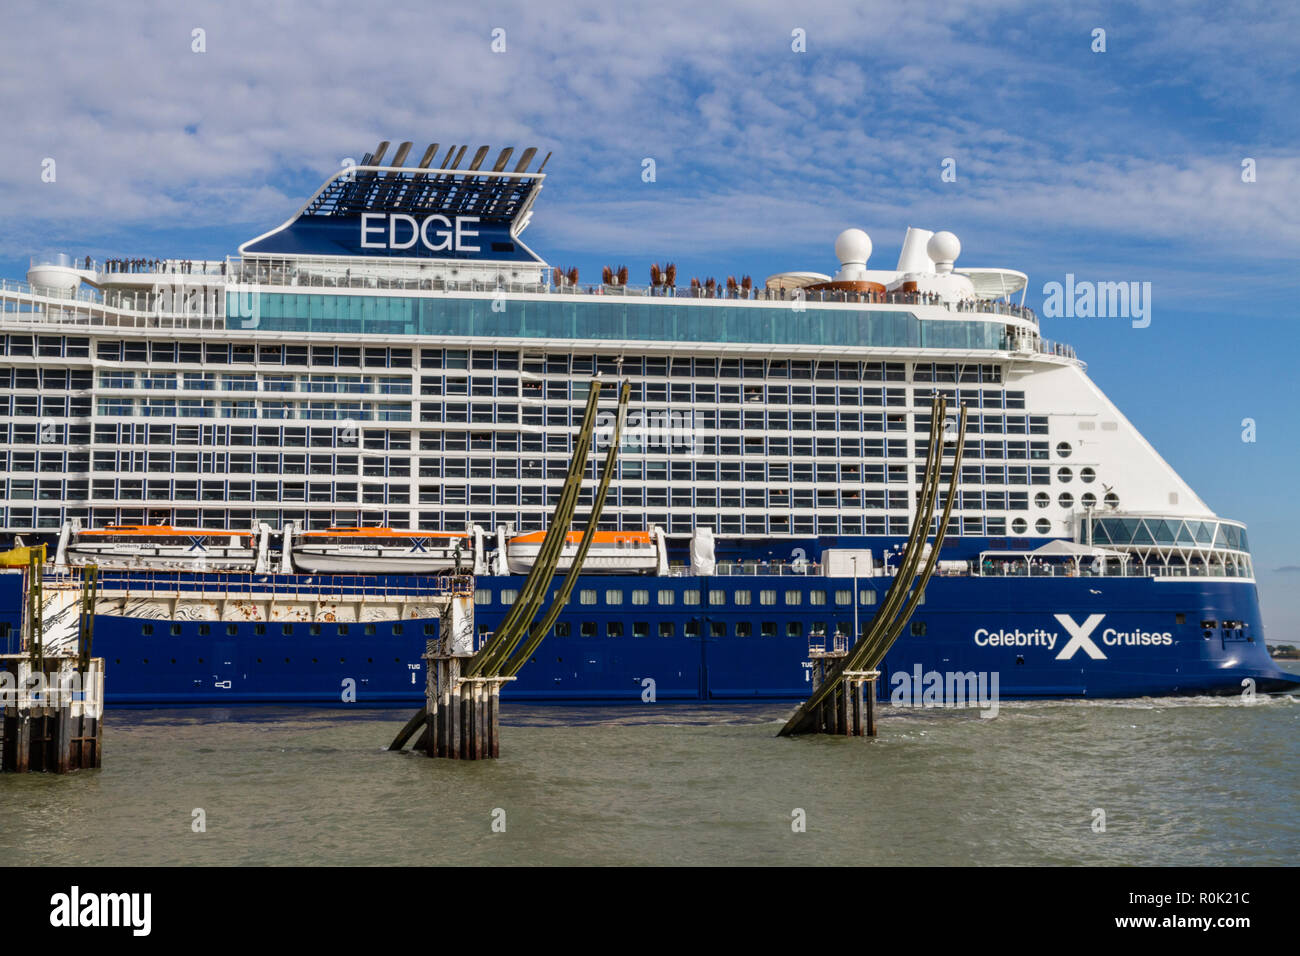 Celebrity Edge est la première classe de navire de croisière exploité par Celebrity Cruises Celebrity.Edge a été construit au chantier naval STX en France Banque D'Images